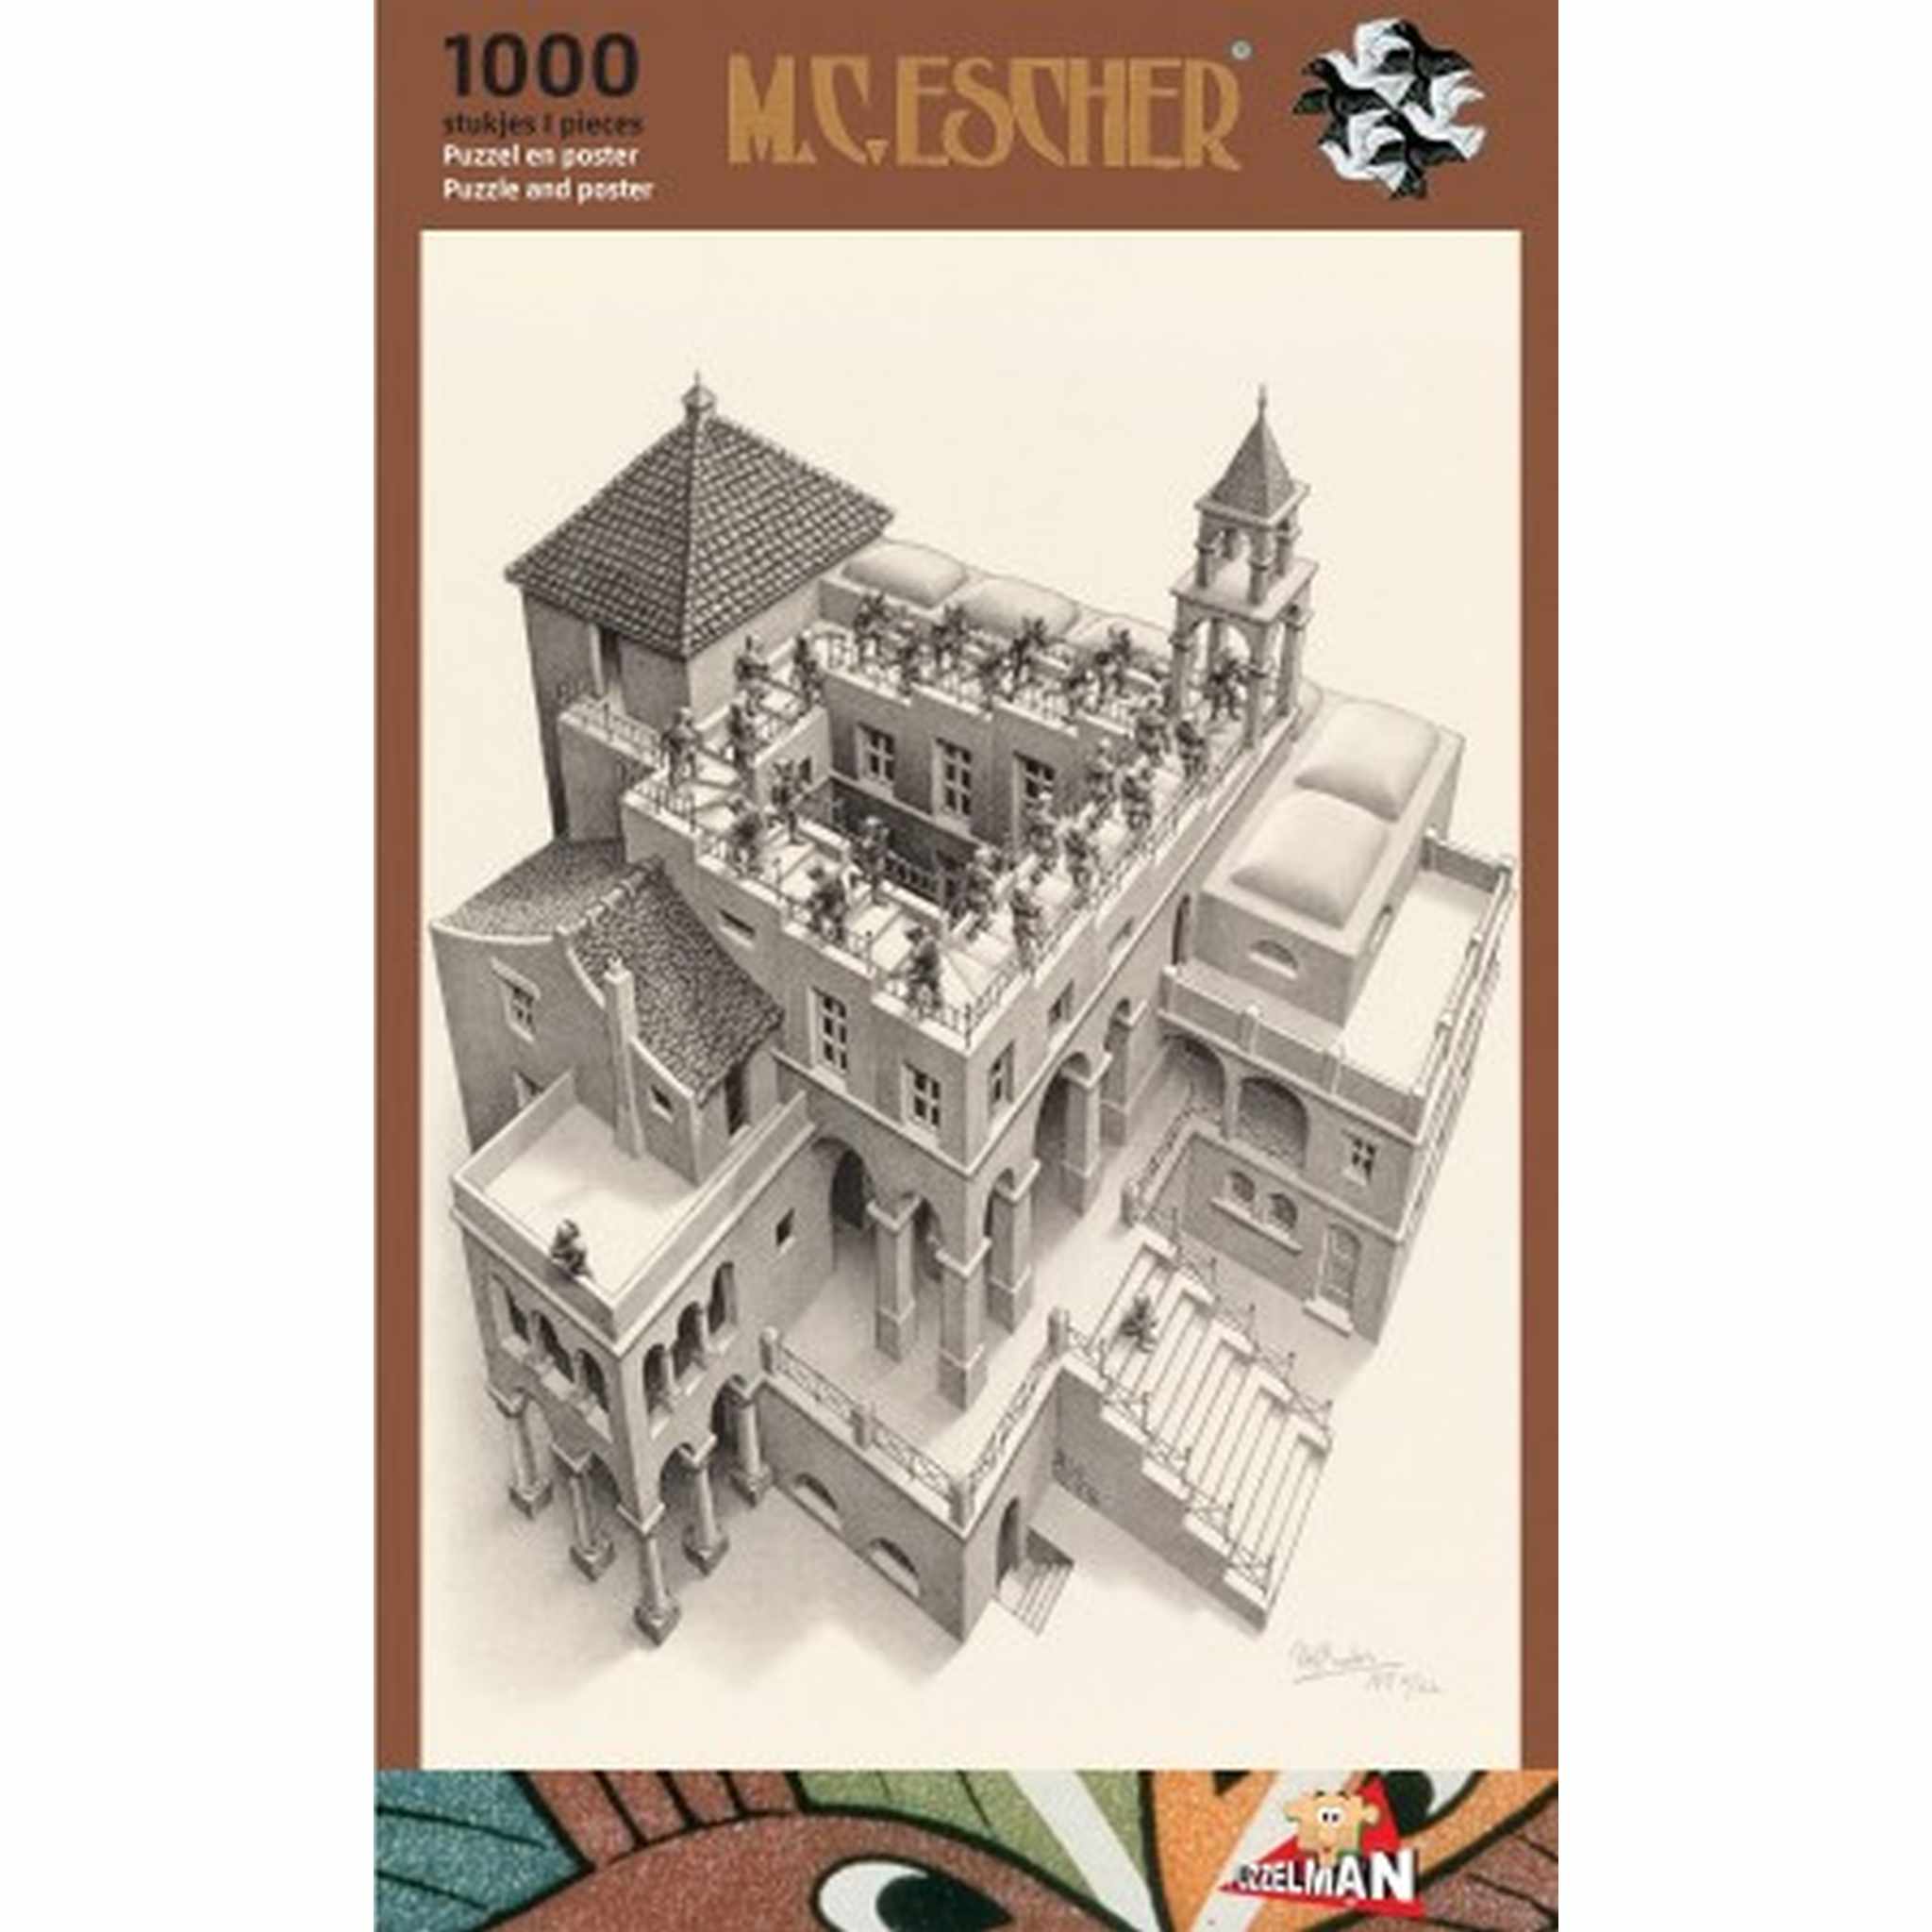 Klimmen En Dalen M.C. Escher (1000) PUZ-820 Boosterbox | Speldorado